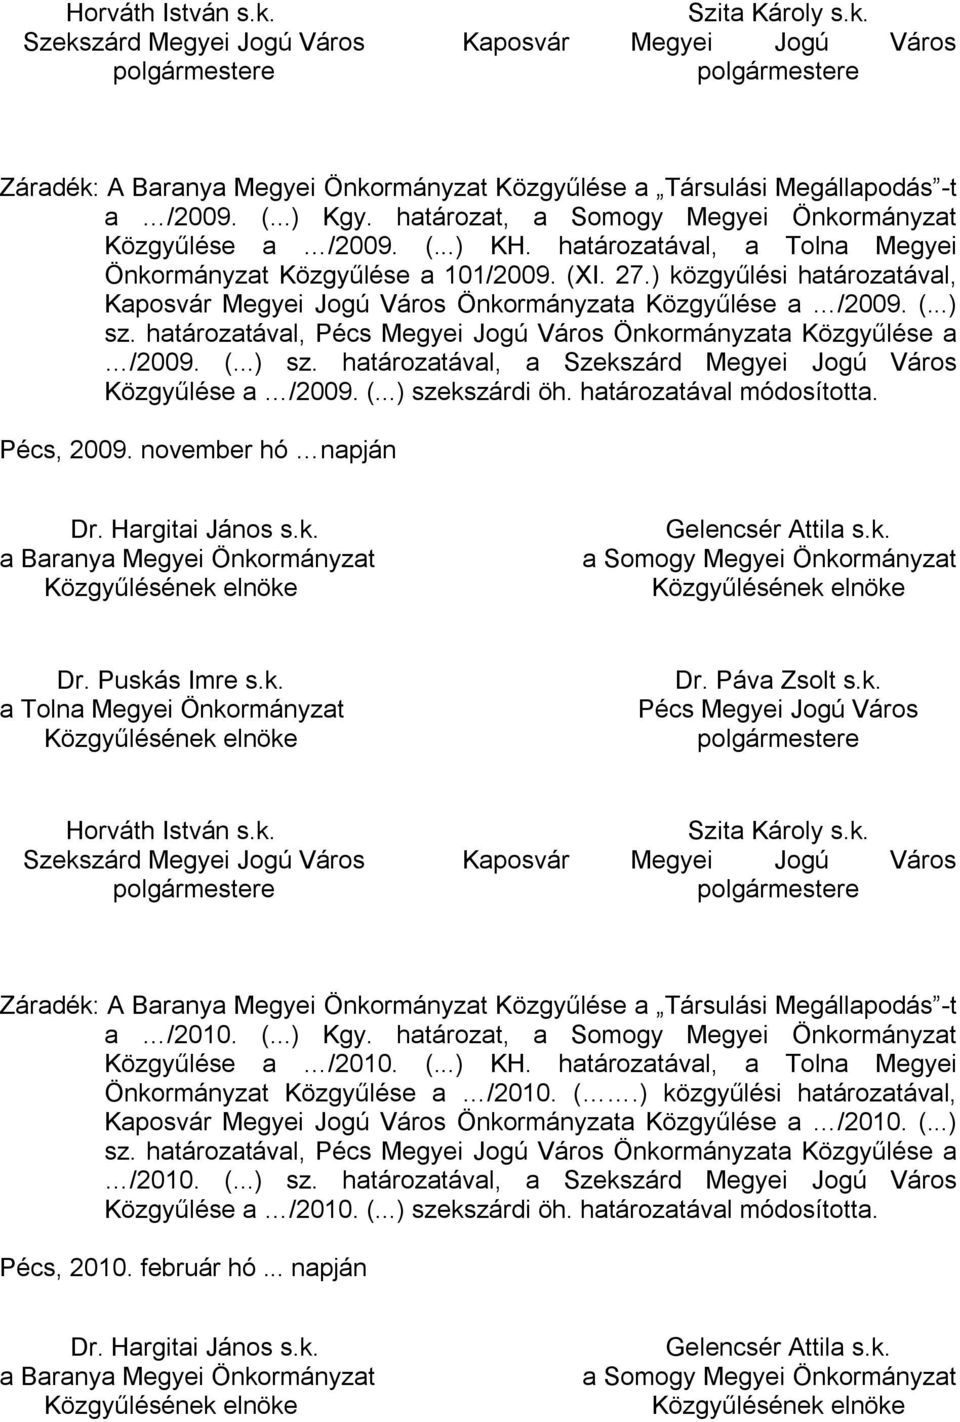 ) közgyűlési határozatával, Kaposvár Megyei Jogú Város Önkormányzata Közgyűlése a /2009. (...) sz. határozatával, Pécs Megyei Jogú Város Önkormányzata Közgyűlése a /2009. (...) sz. határozatával, a Szekszárd Megyei Jogú Város Közgyűlése a /2009.